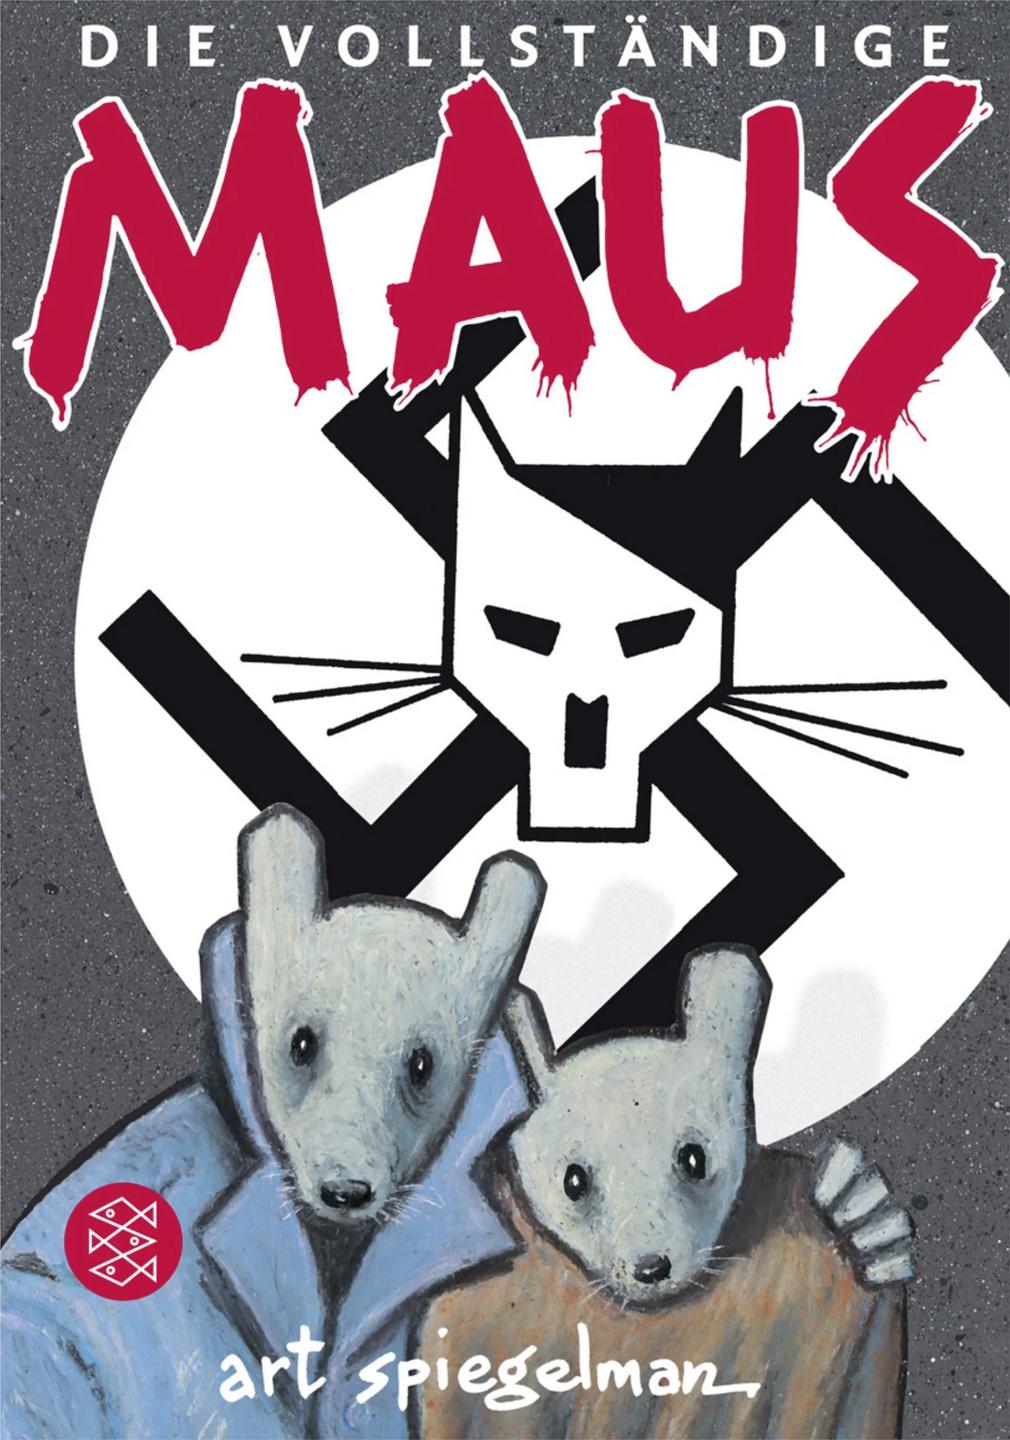 Das Buchcover vom Comic "Maus" von Art Spiegelman.